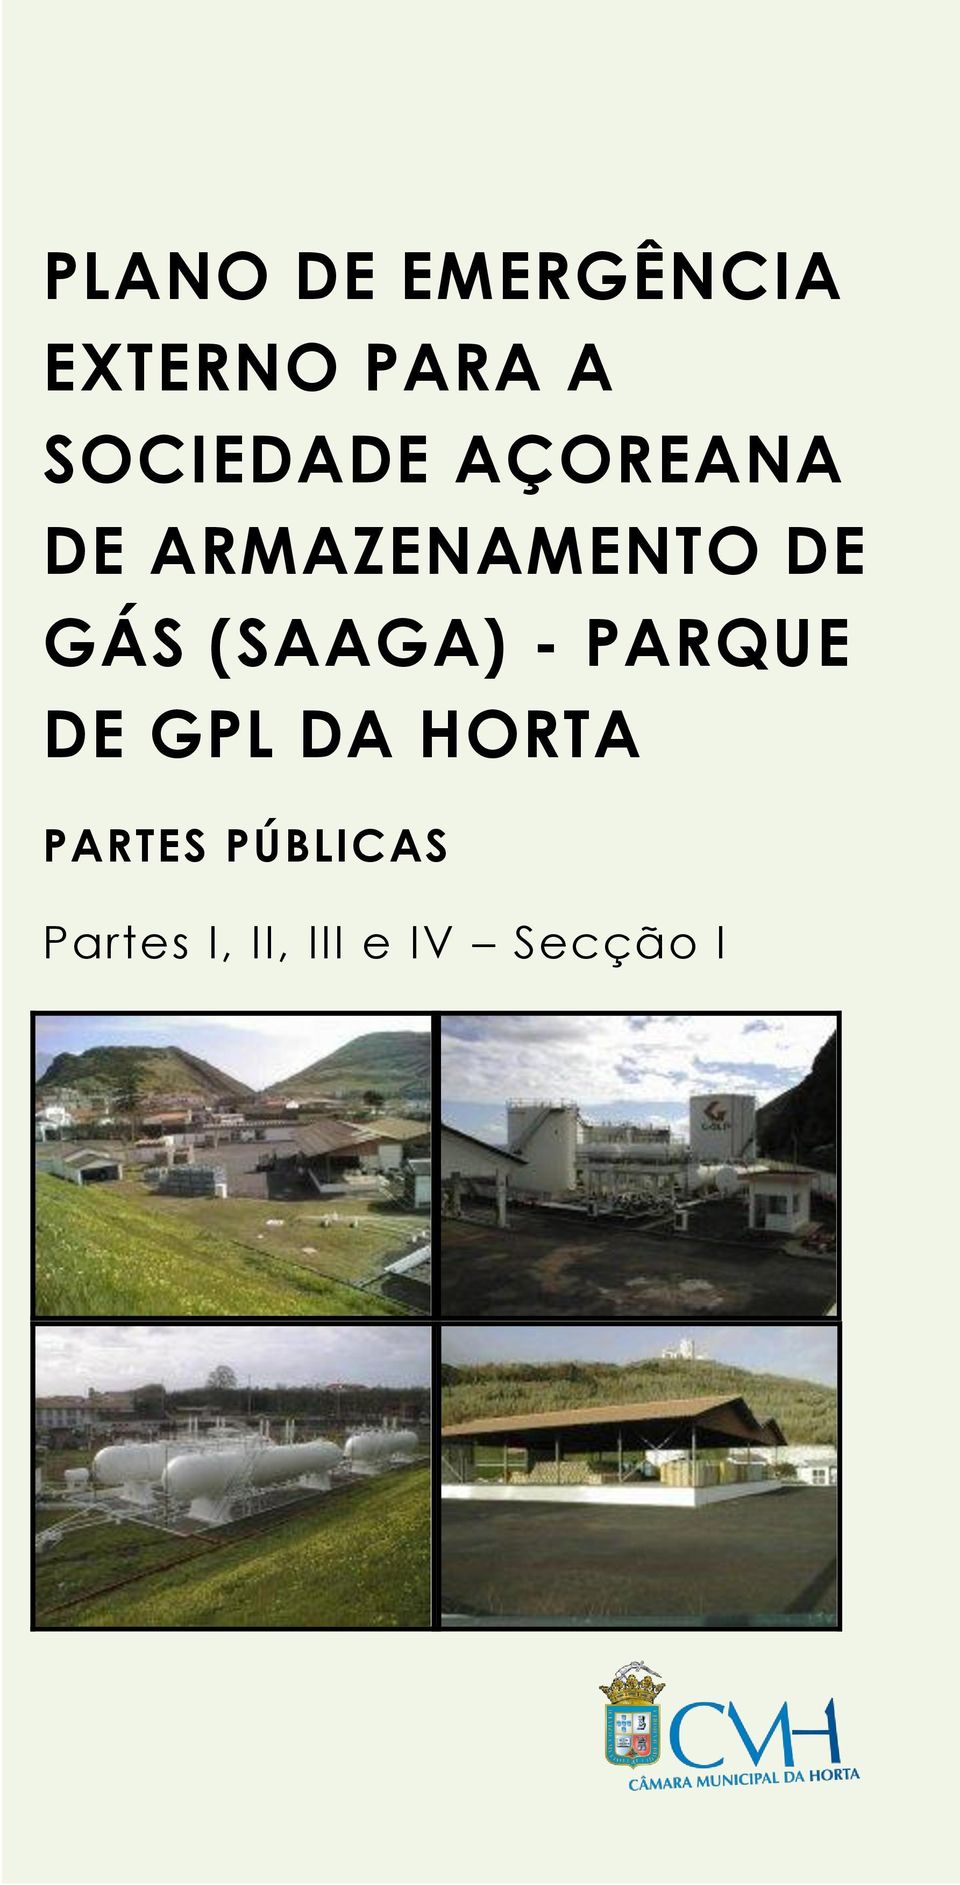 GÁS (SAAGA) - PARQUE DE GPL DA HORTA